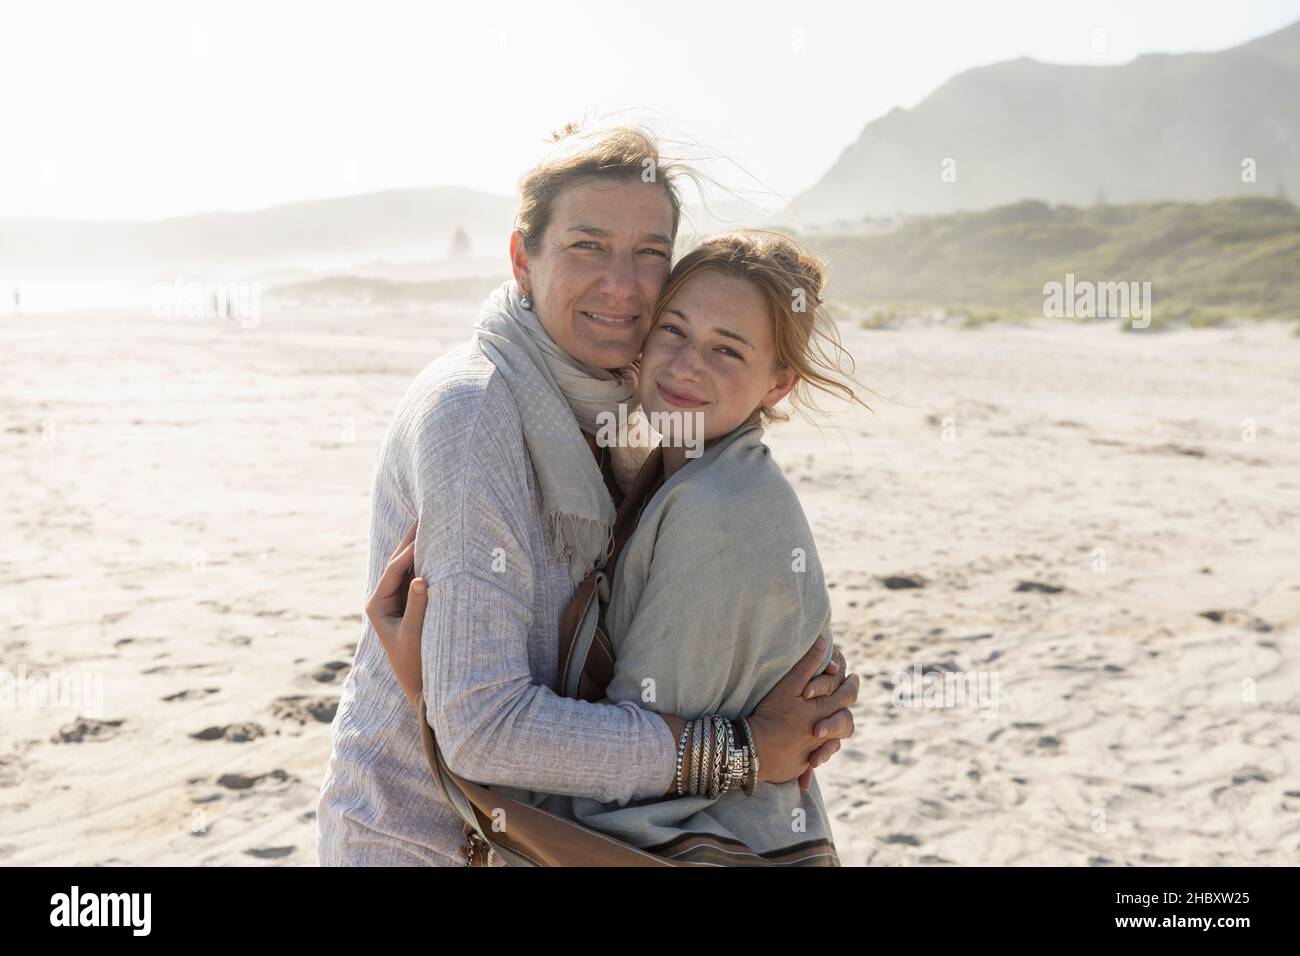 Die Erwachsene Frau und ihre Tochter im Teenageralter umarmen sich und stehen an einem windgepeitschten Strand Stockfoto